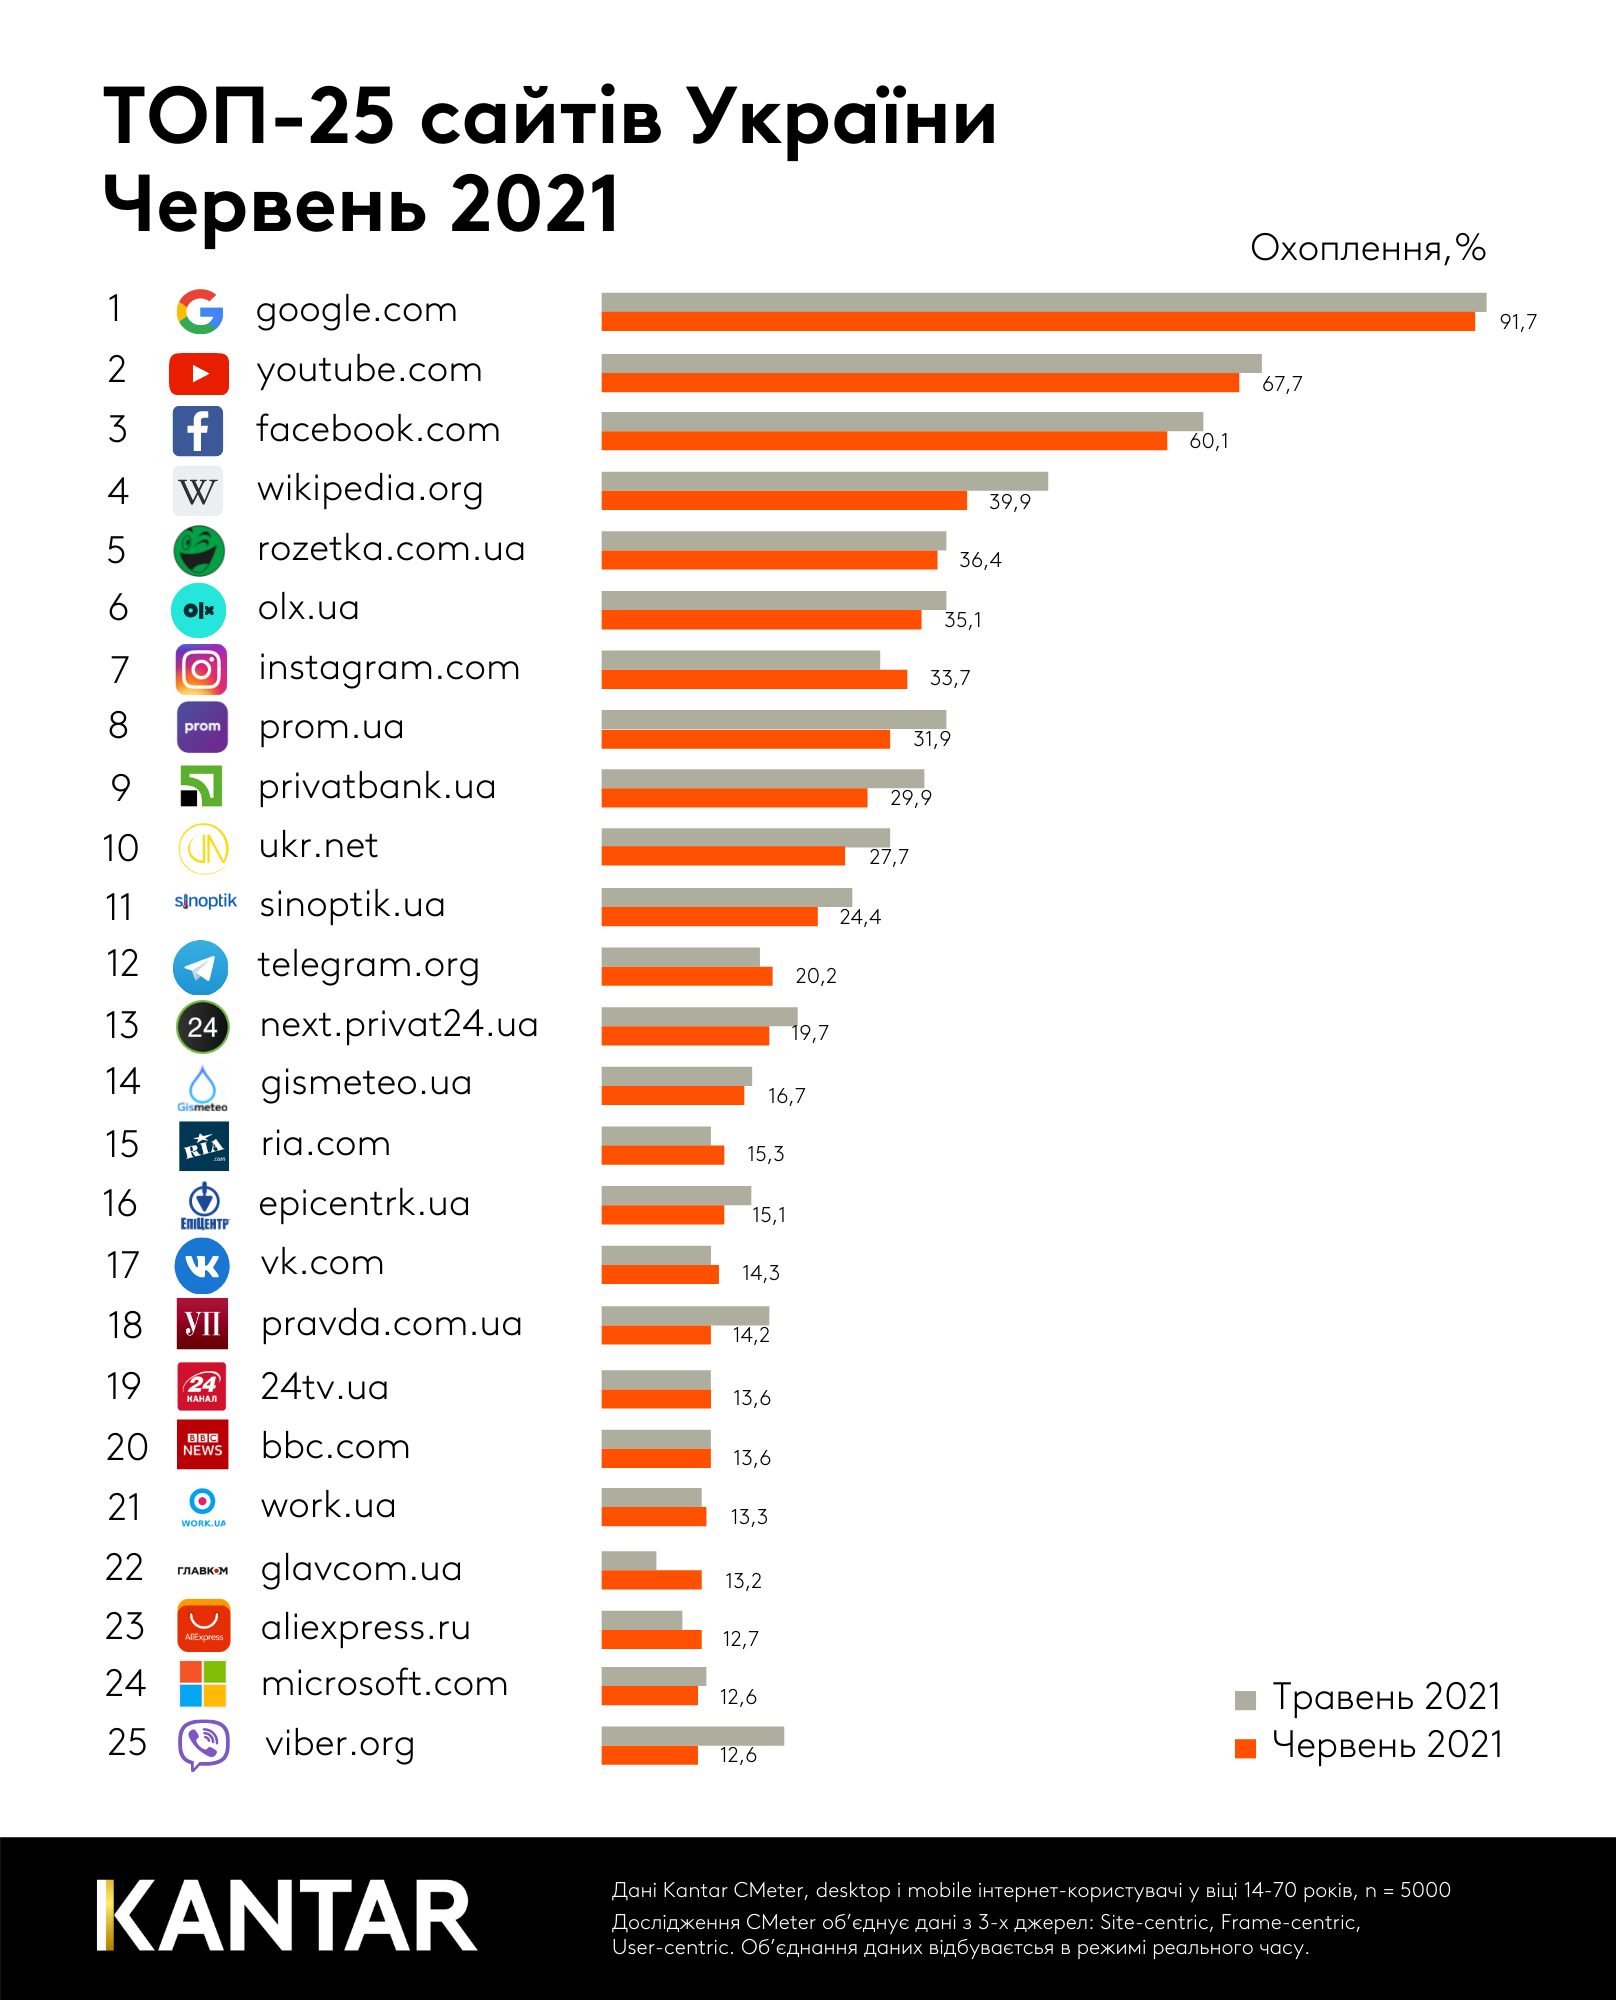 Названы самые популярные сайты в Украины за июнь 2021 года